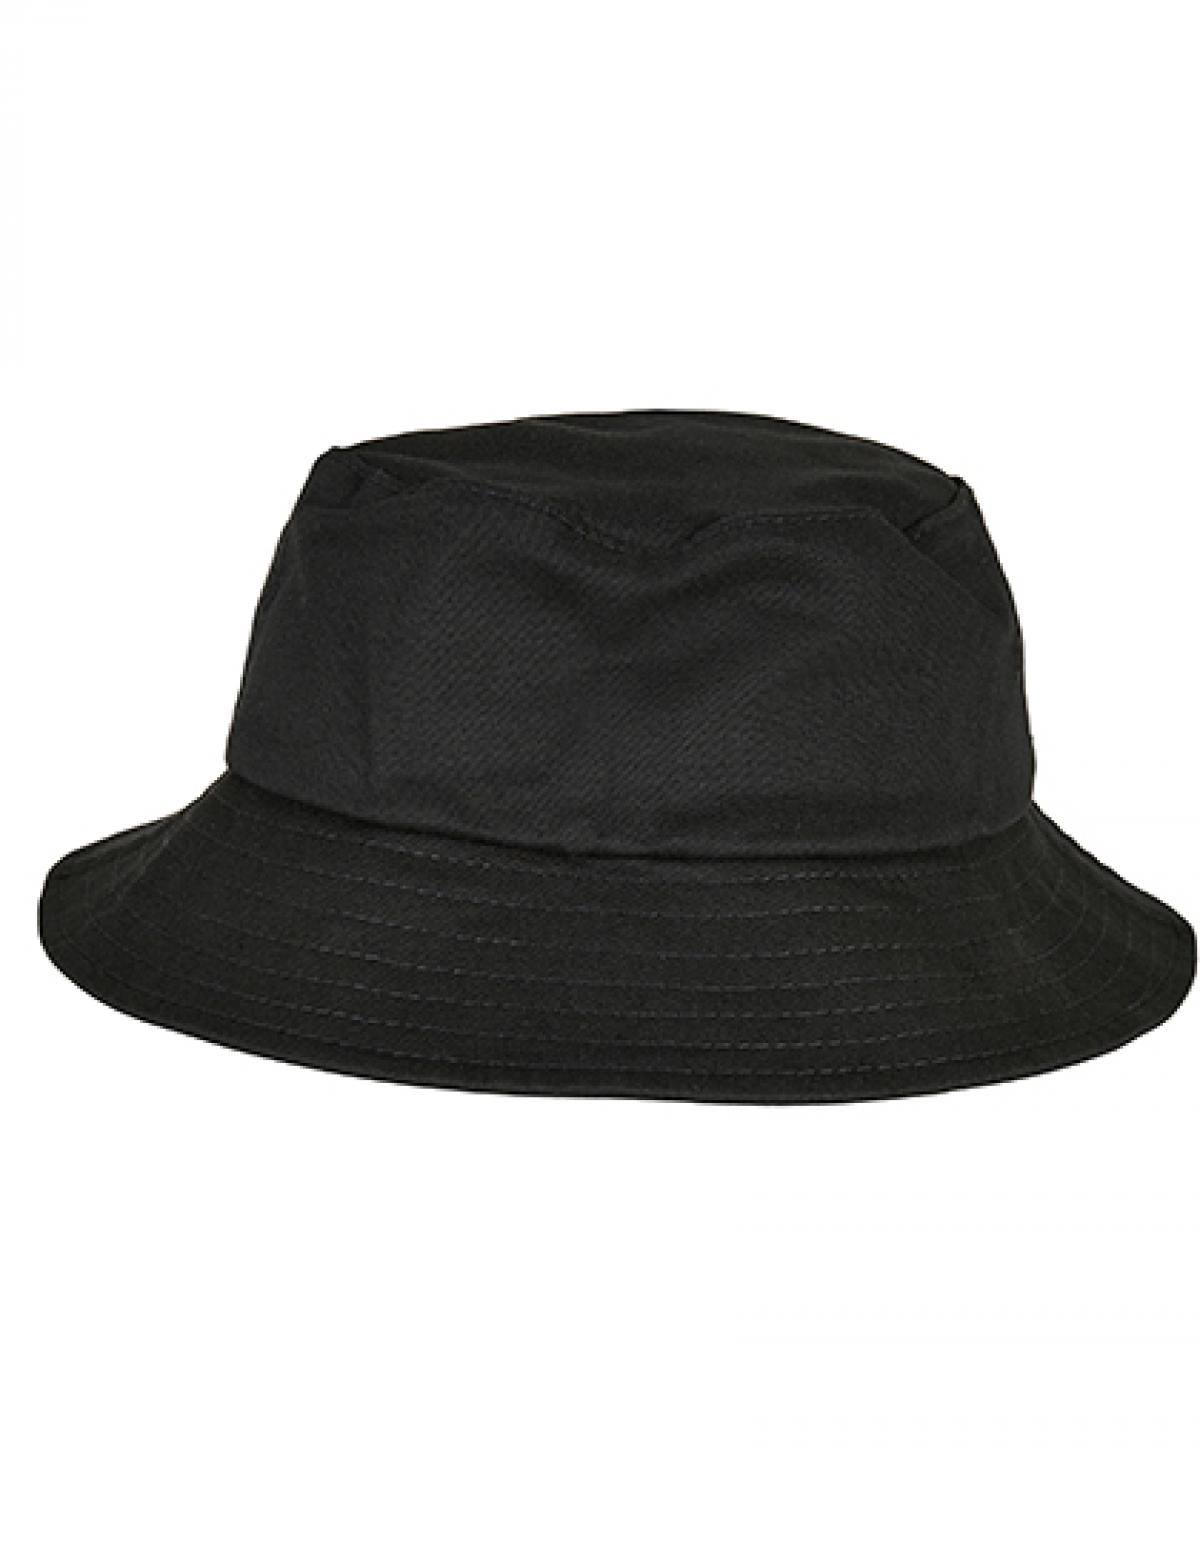 Kids´ Flexfit Cotton Twill Bucket Hat knautschbare Form | FLEXFIT | eBay